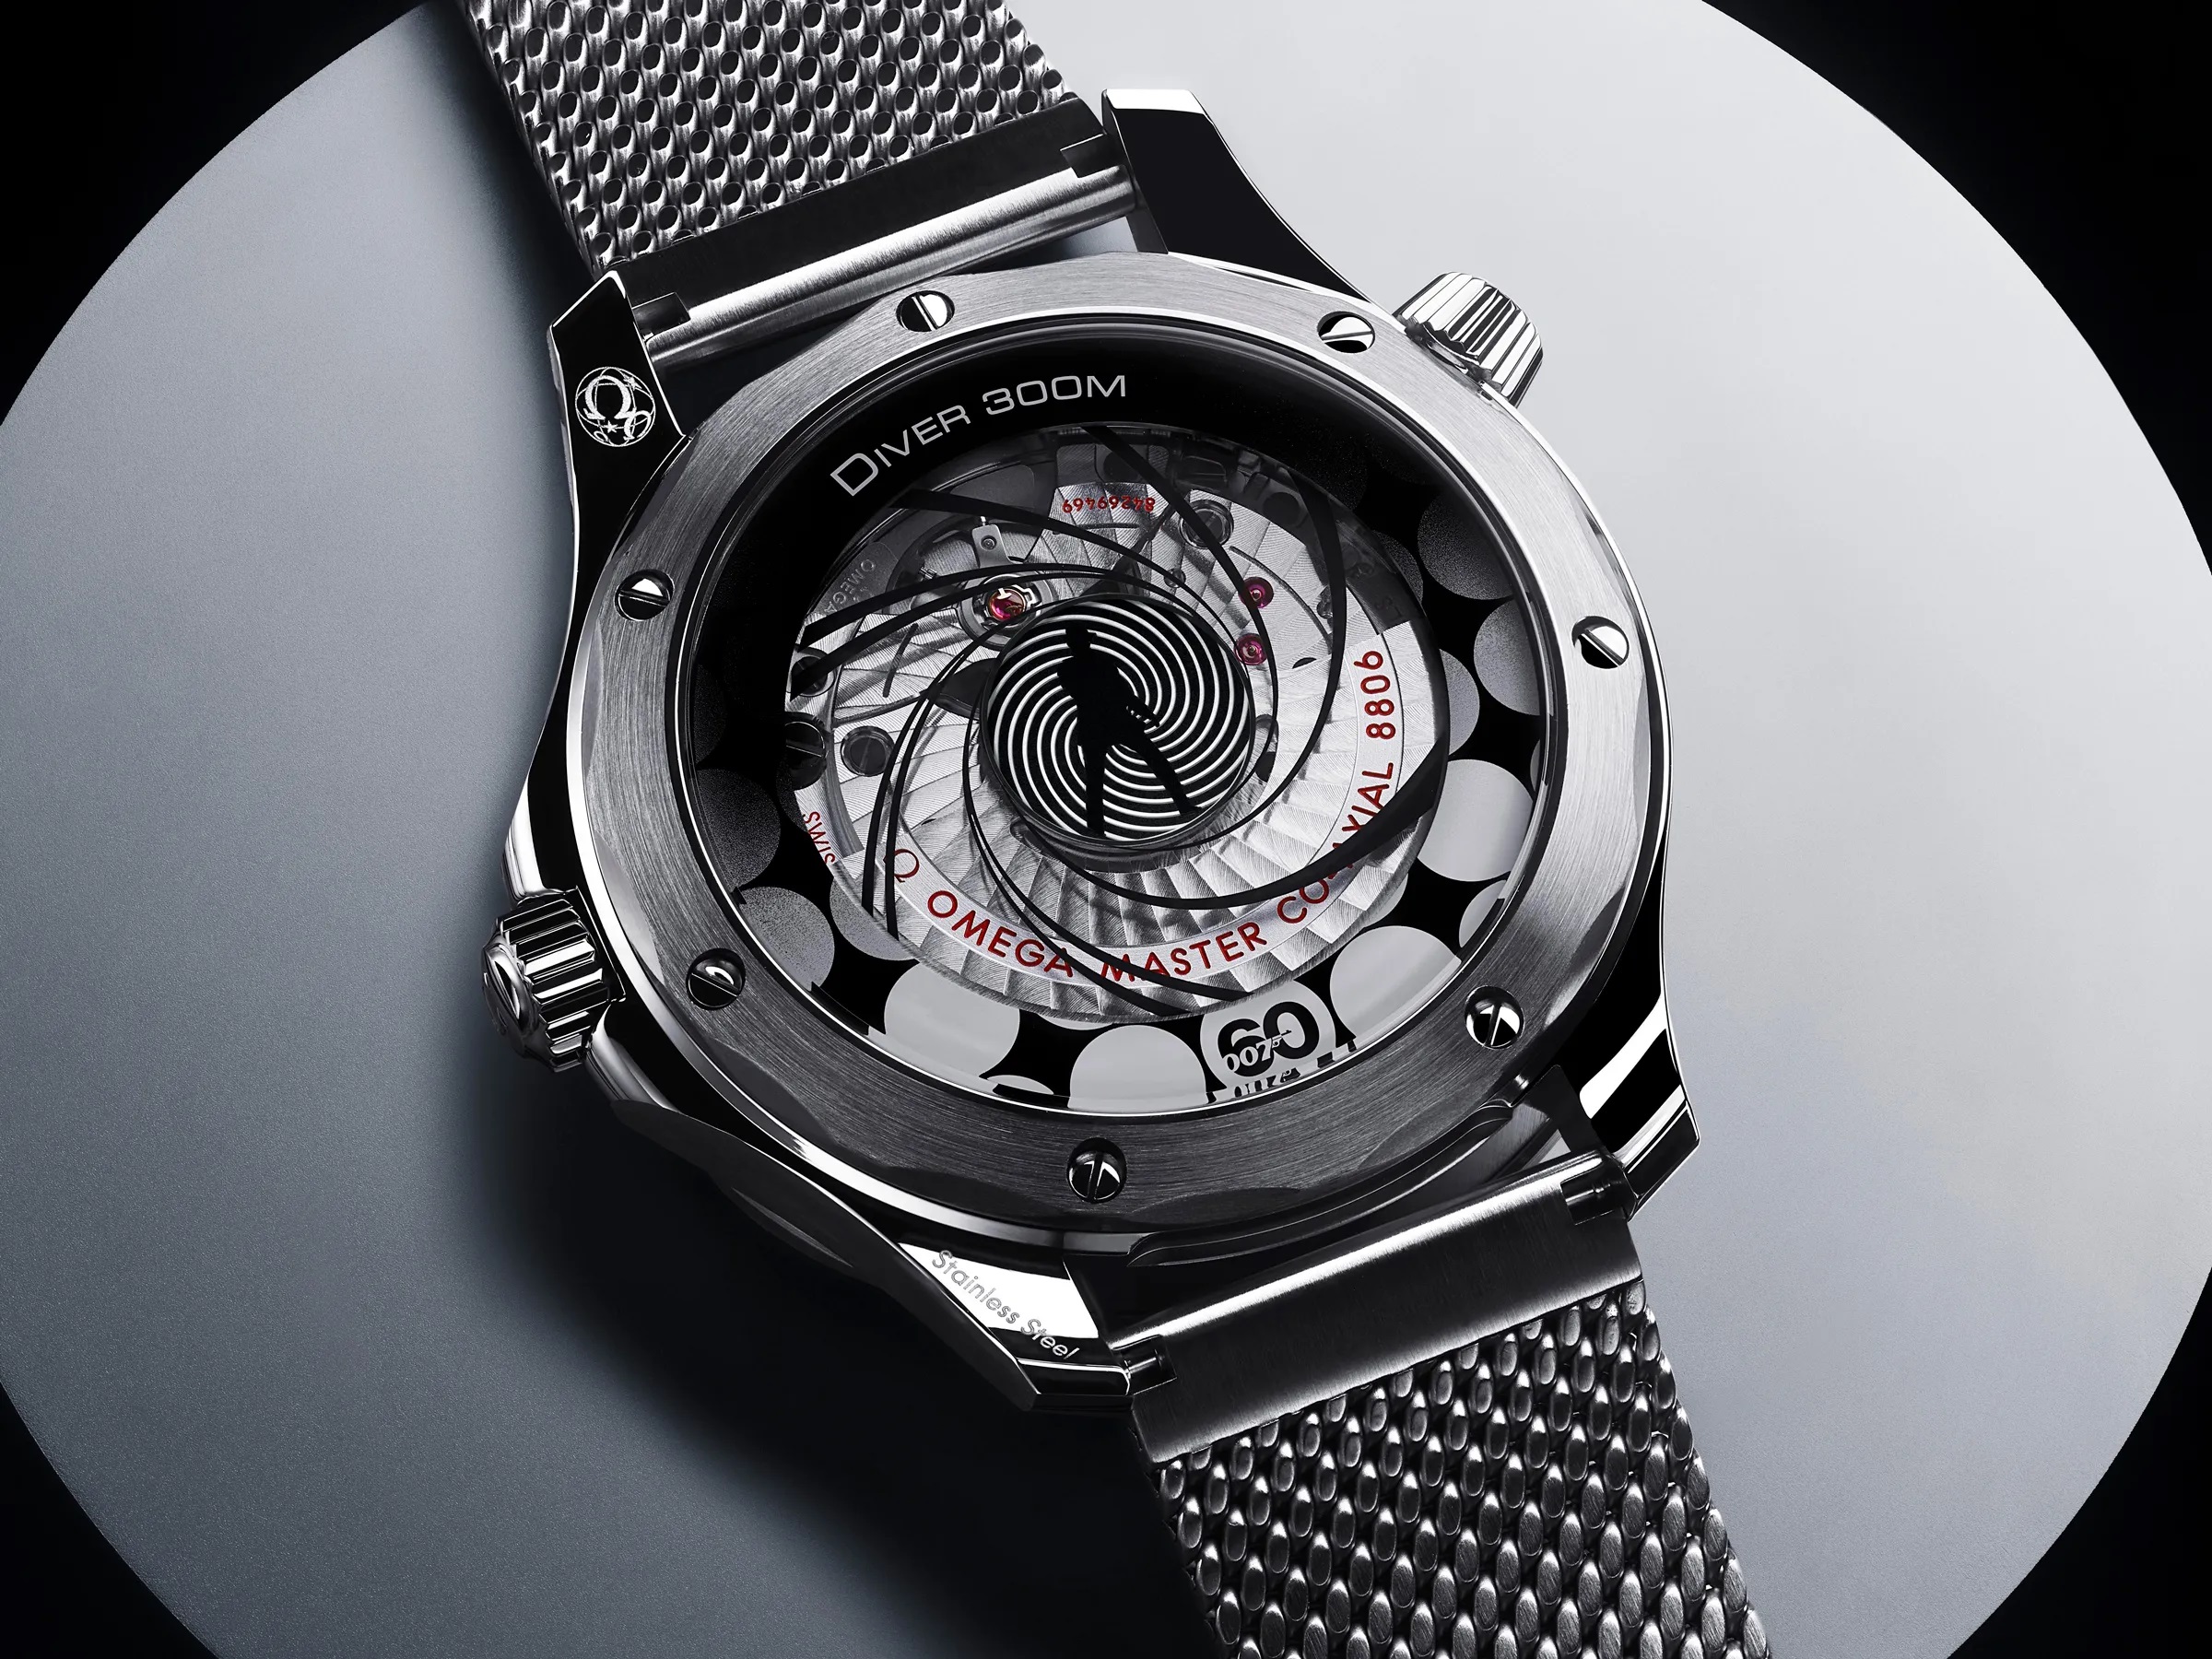 Omega zaprezentowała zegarek za 7600 dolarów, który replikuje początki filmów o Jamesie Bondzie za pomocą niczego innego jak mechaniki